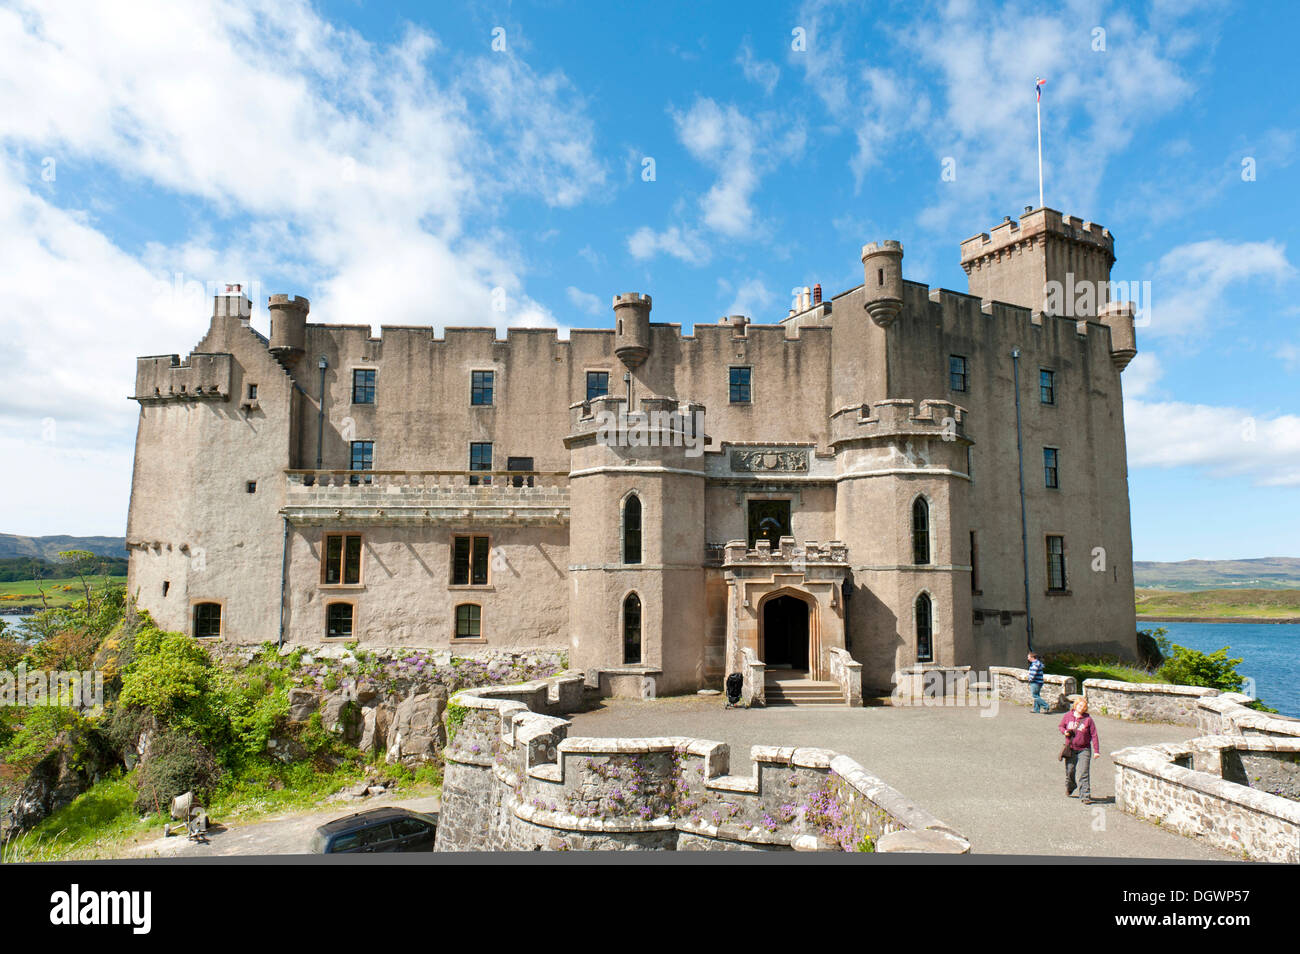 Il castello di Dunvegan, sede ancestrale del Clan McLeod, Innere Hebriden, Insel Skye, Duirinish, Schottland, Scotland, Regno Unito Foto Stock